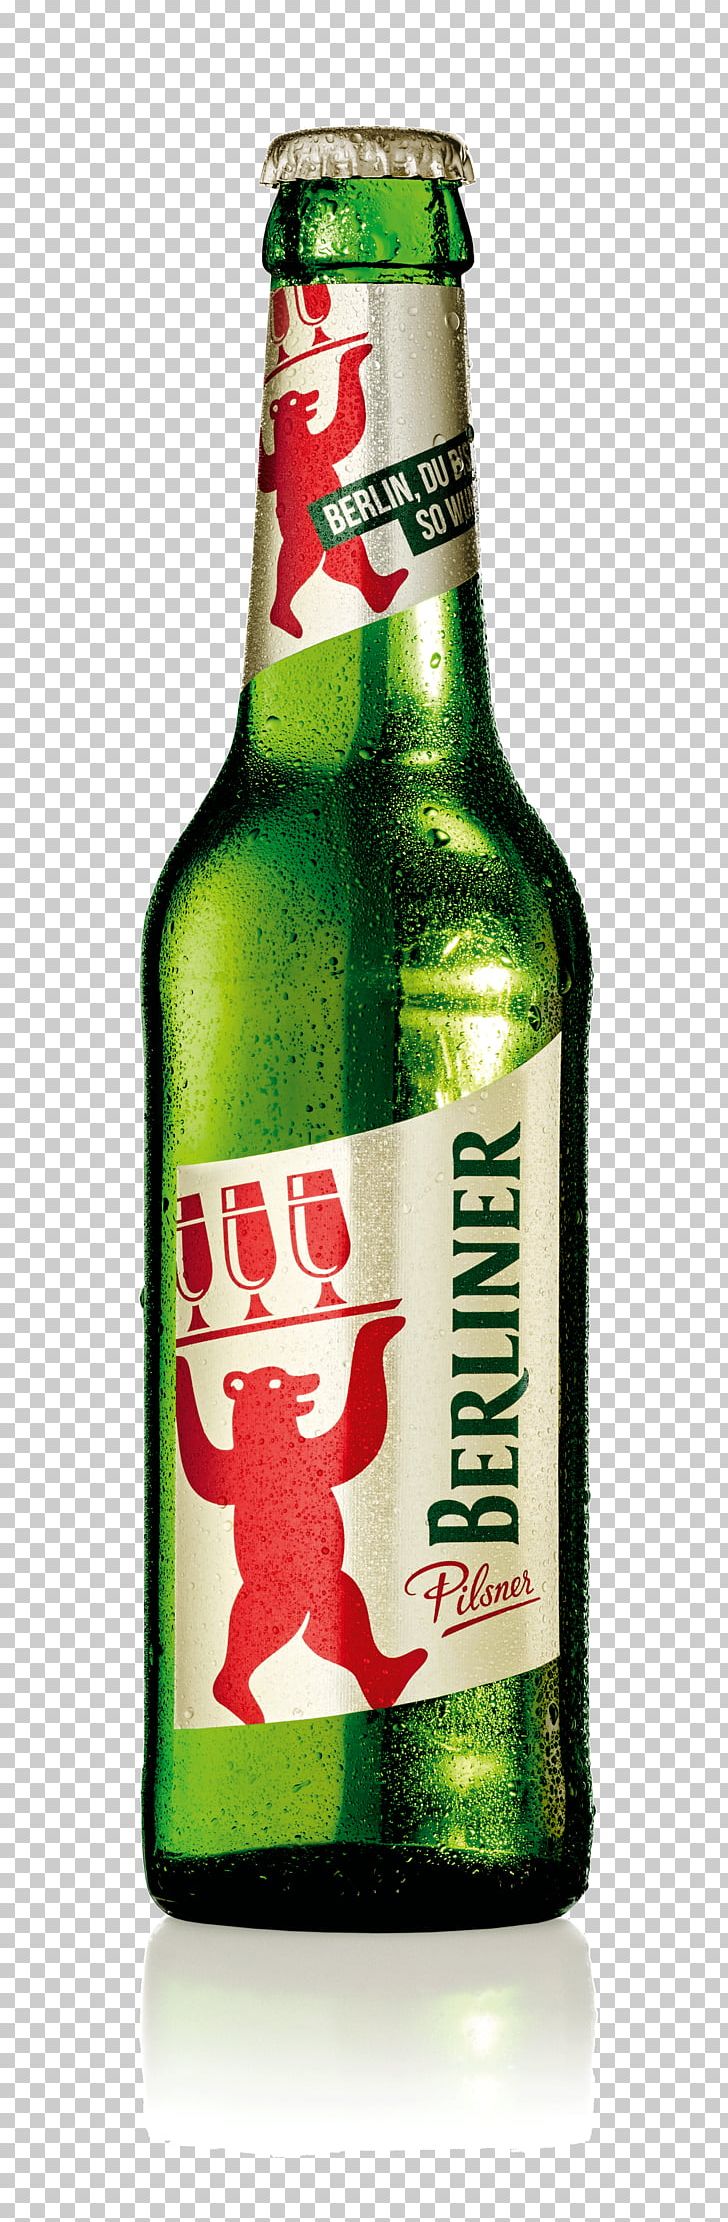 Lager Berliner Pilsner Beer Bottle PNG, Clipart, 2018, Alcoholic Beverage, Beer, Beer Bottle, Berlin Free PNG Download